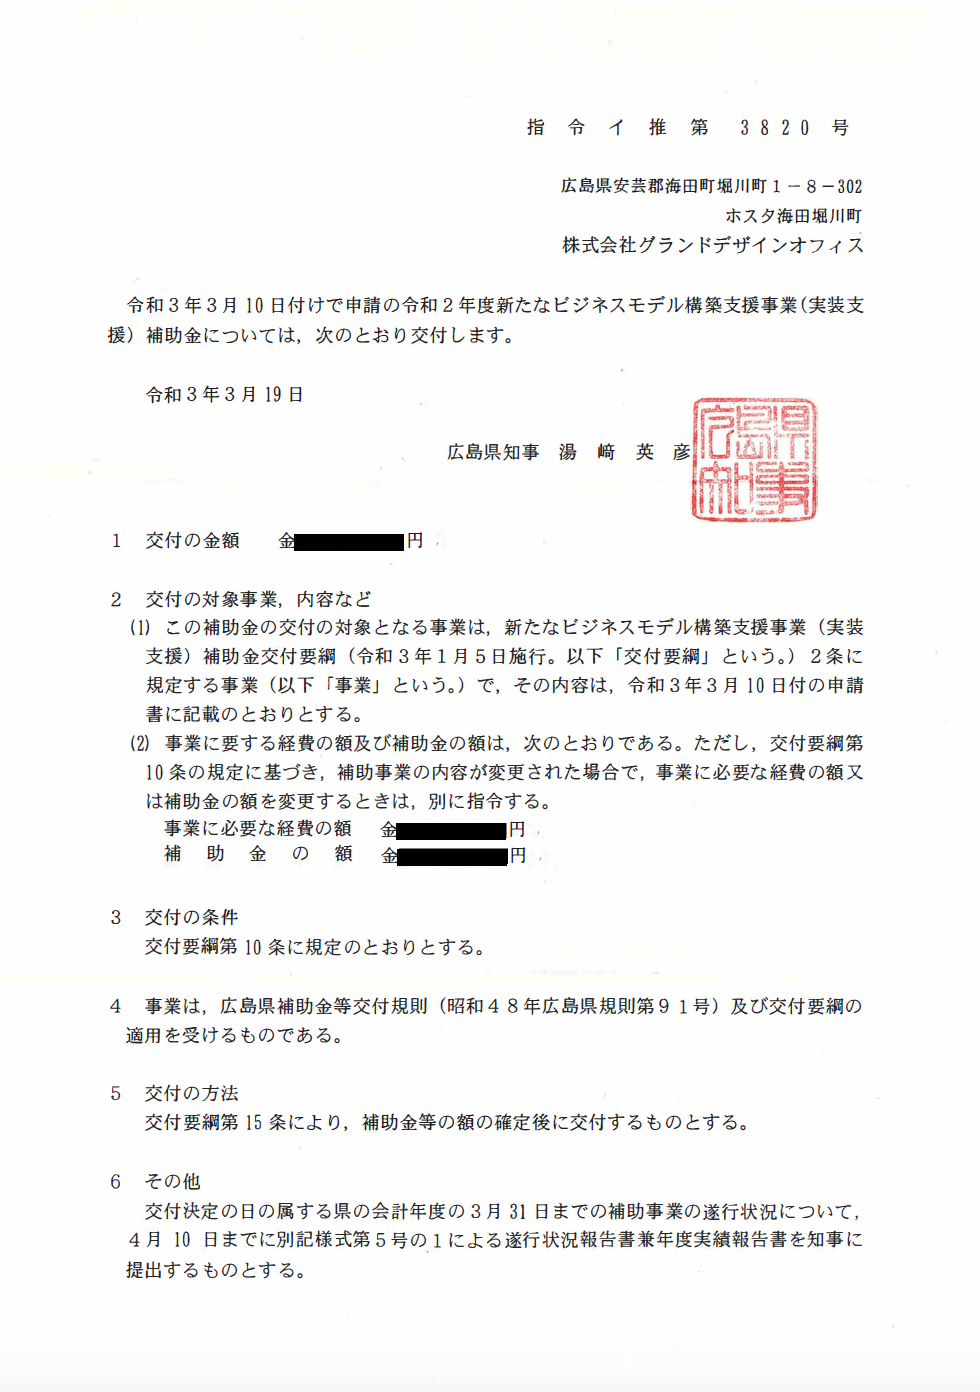 広島県ビジネスモデル構築支援事業交付決定通知書